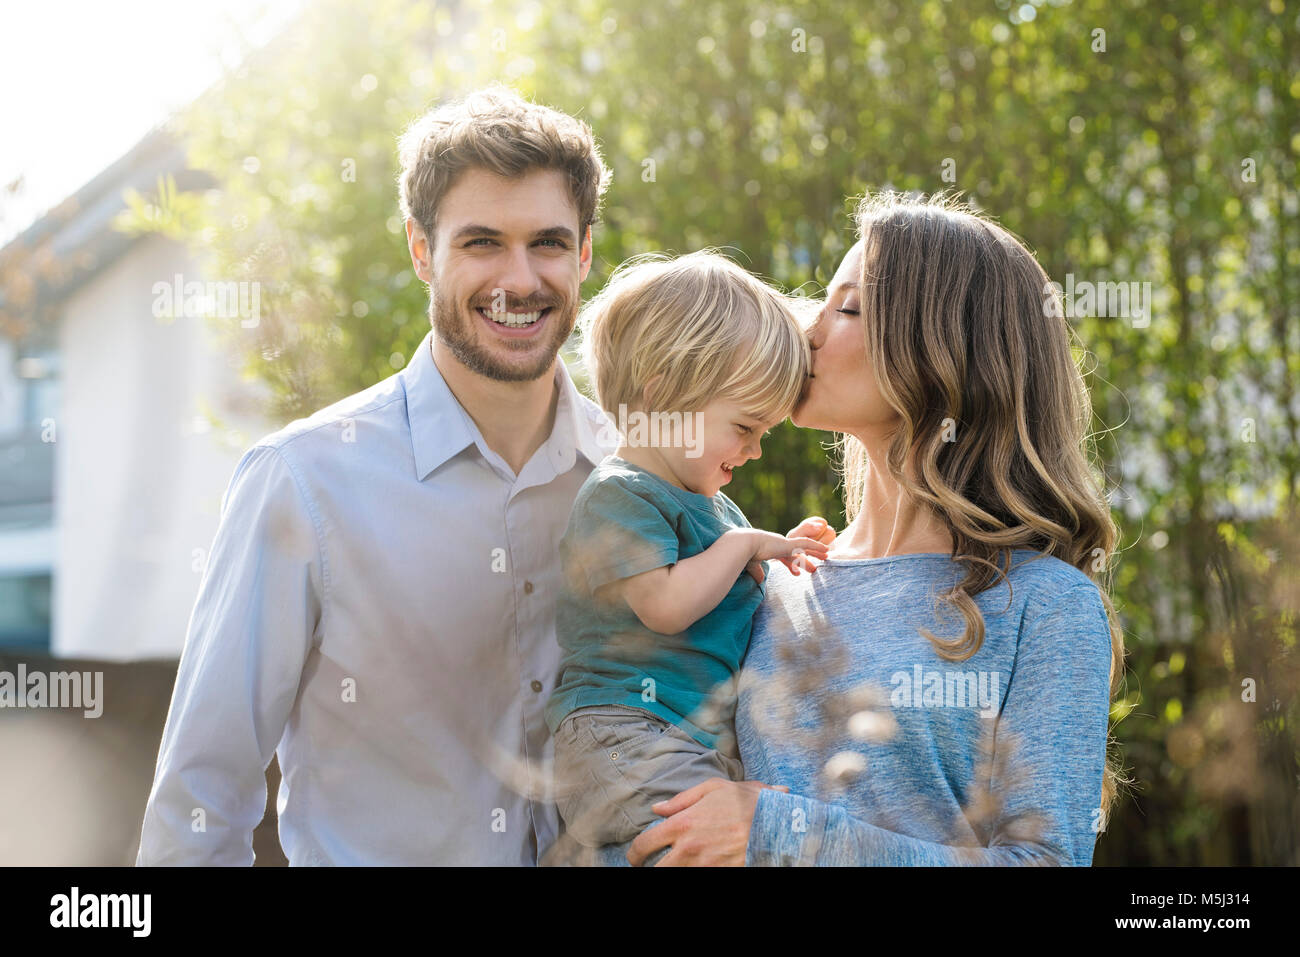 Familia Feliz en el jardín de enfrente de plantas de bambú con besos madre hijo Foto de stock